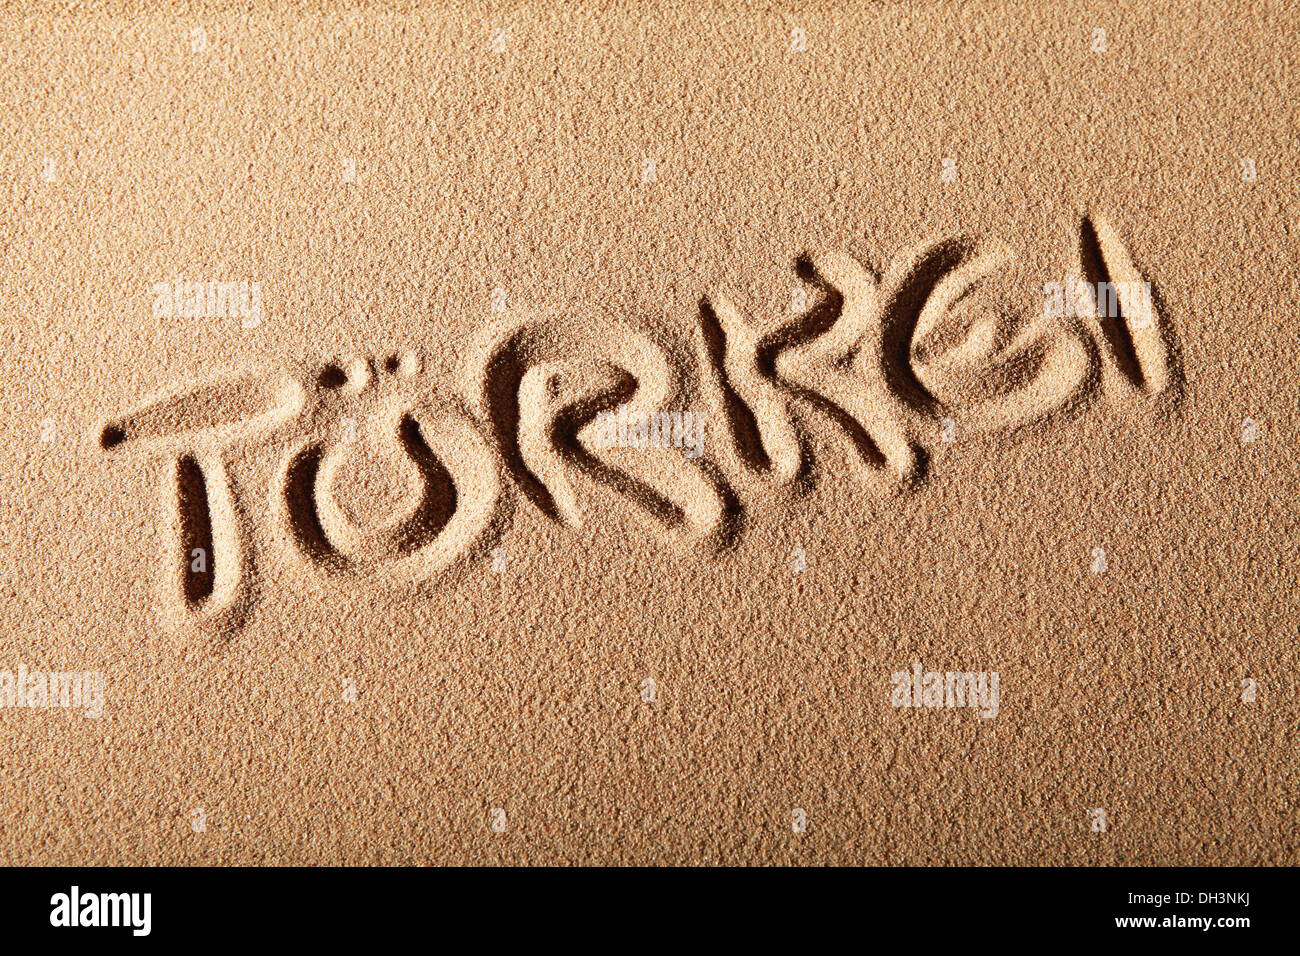 Escrito en la arena "TÜRKEI' o 'Turquía' Foto de stock